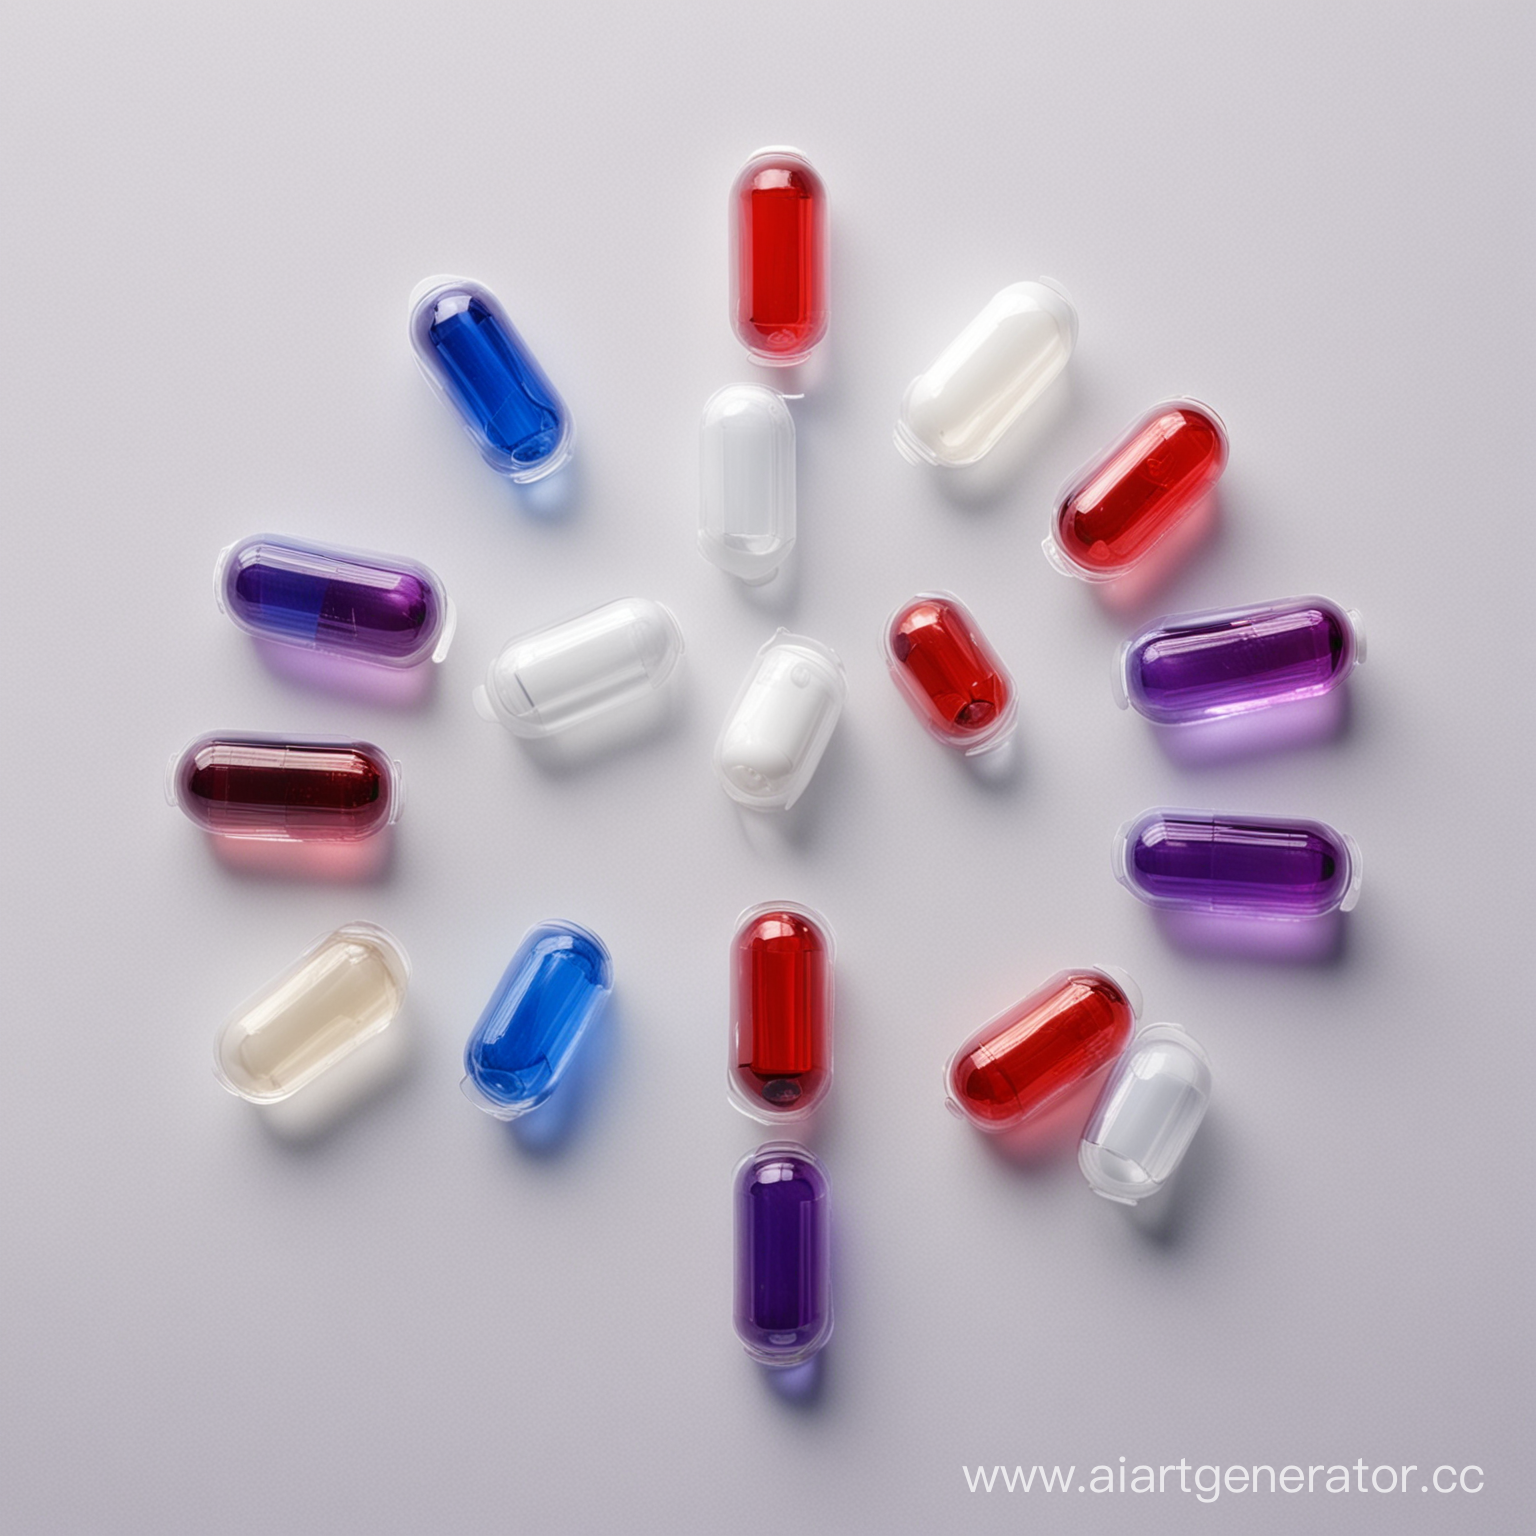 цветные стеклянные капсулы для витаминов, полупрозрачные красно-белые, фиолетово-белые, сине-белые на светлом фоне